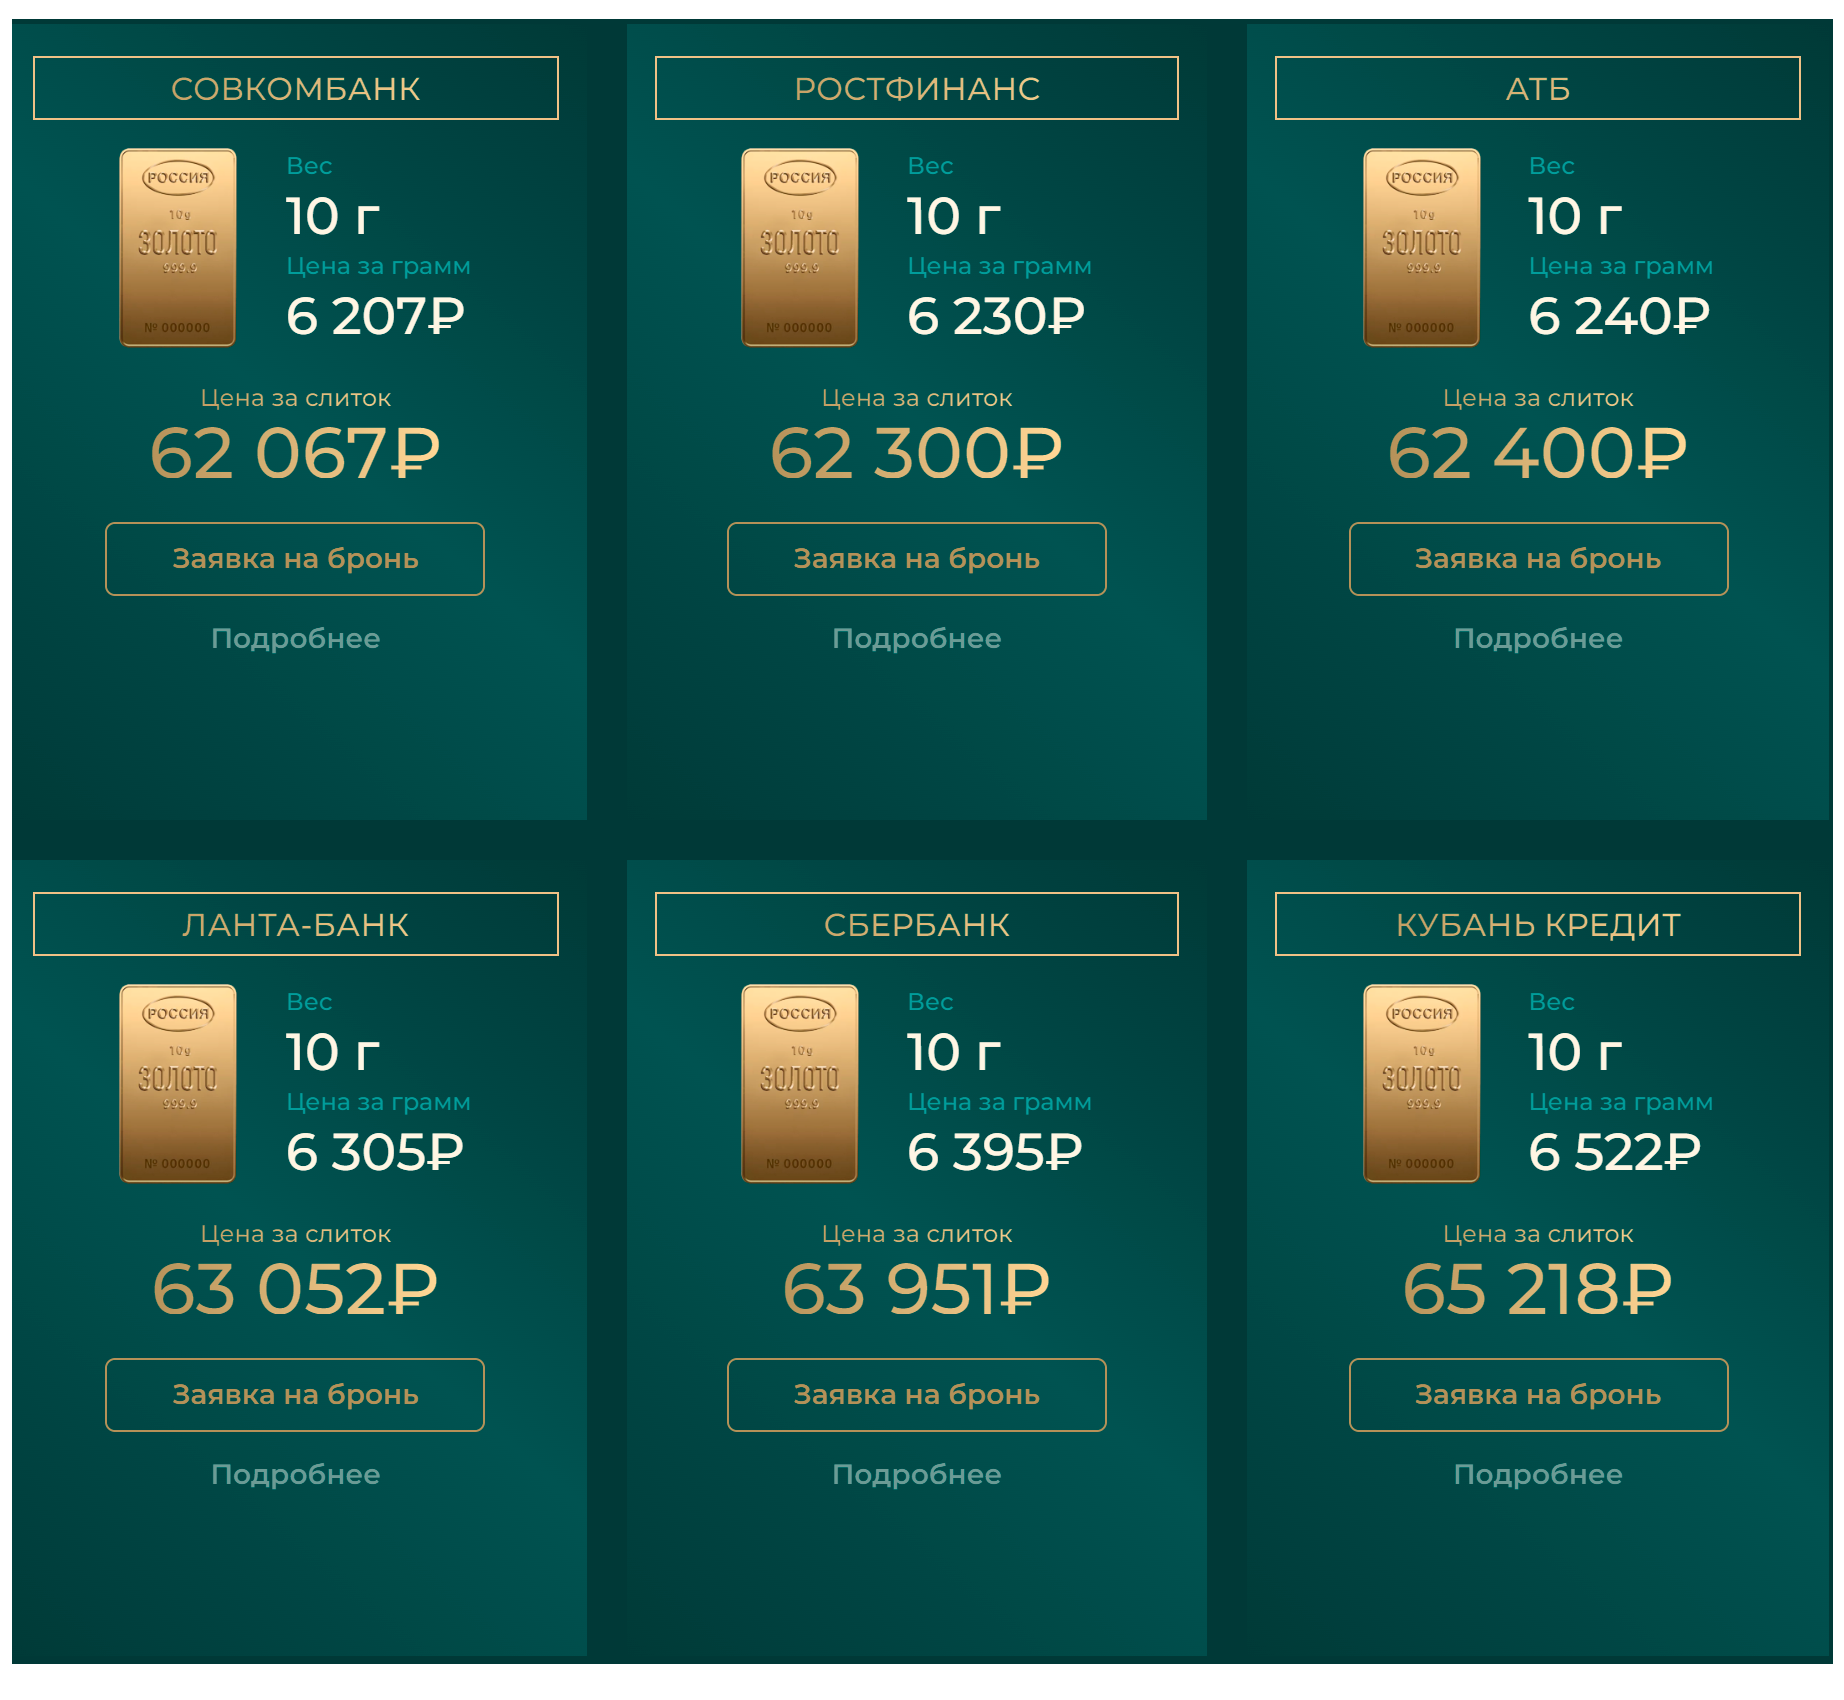 Пример предложений банков по продаже слитков золота на сайте «Маниматика». Источник: moneymatika.ru